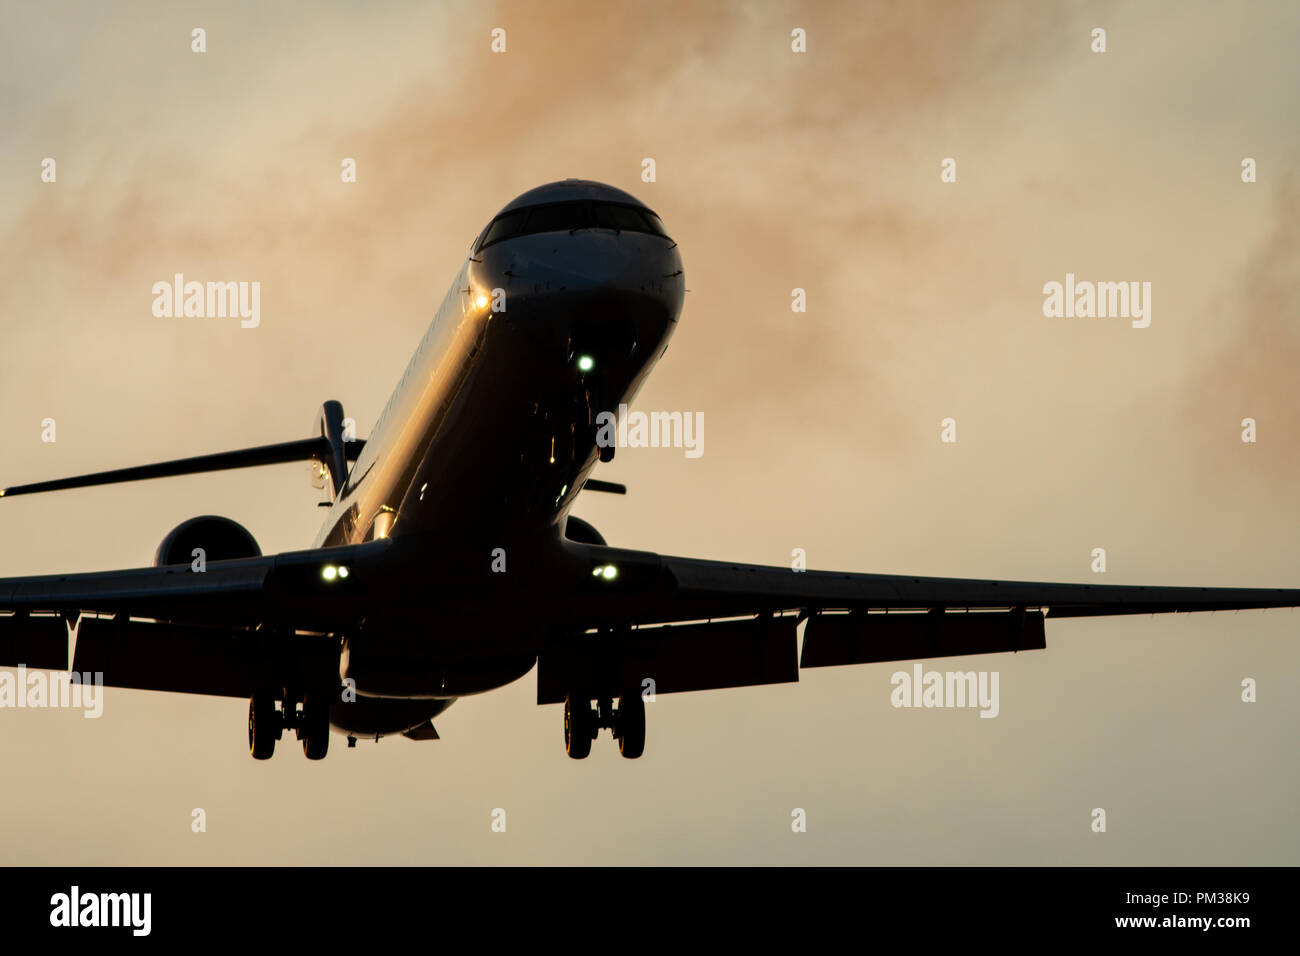 Alto contrasto di aereo a reazione con landing gear down, vista dal basso Foto Stock